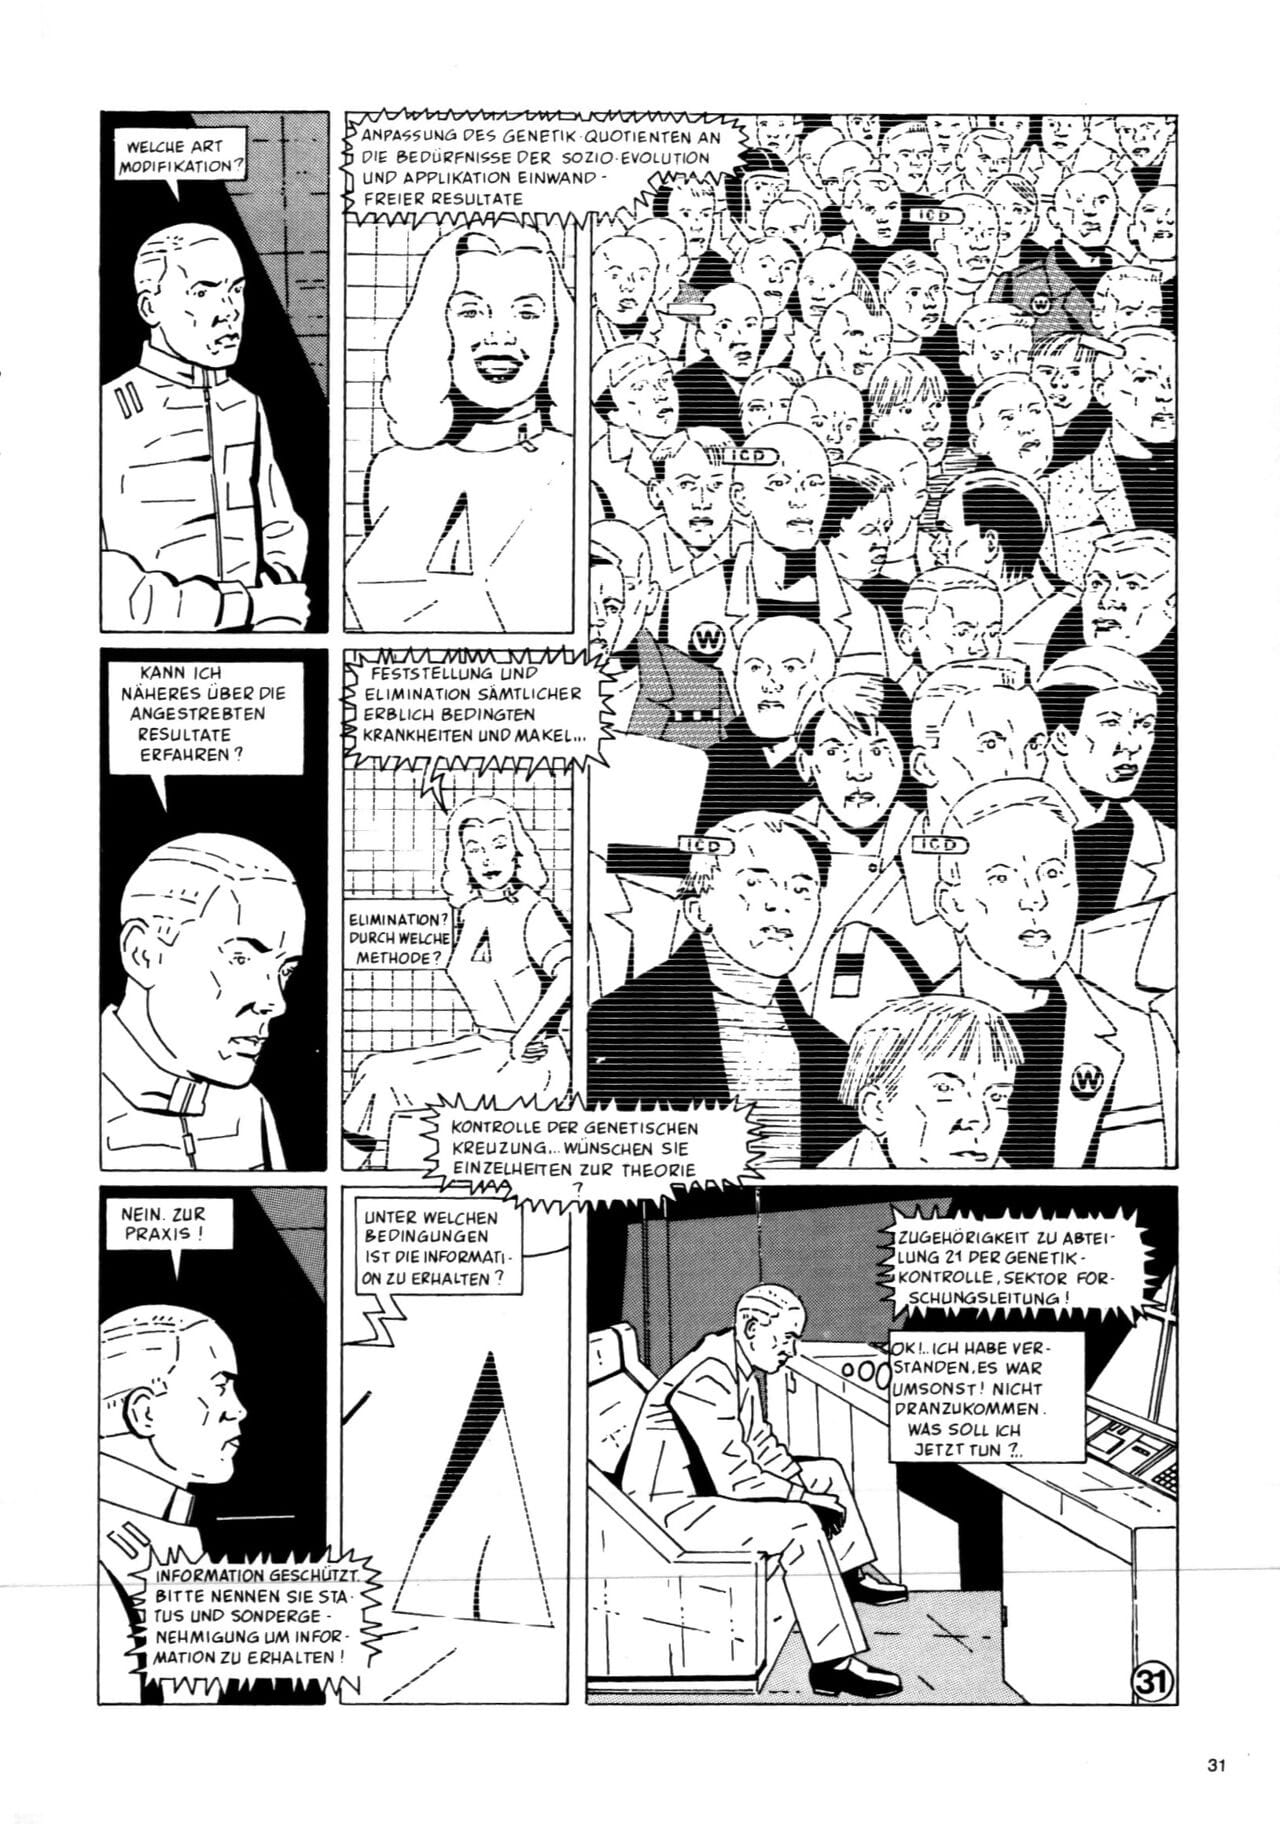 schwermetall #080 część 2 page 1